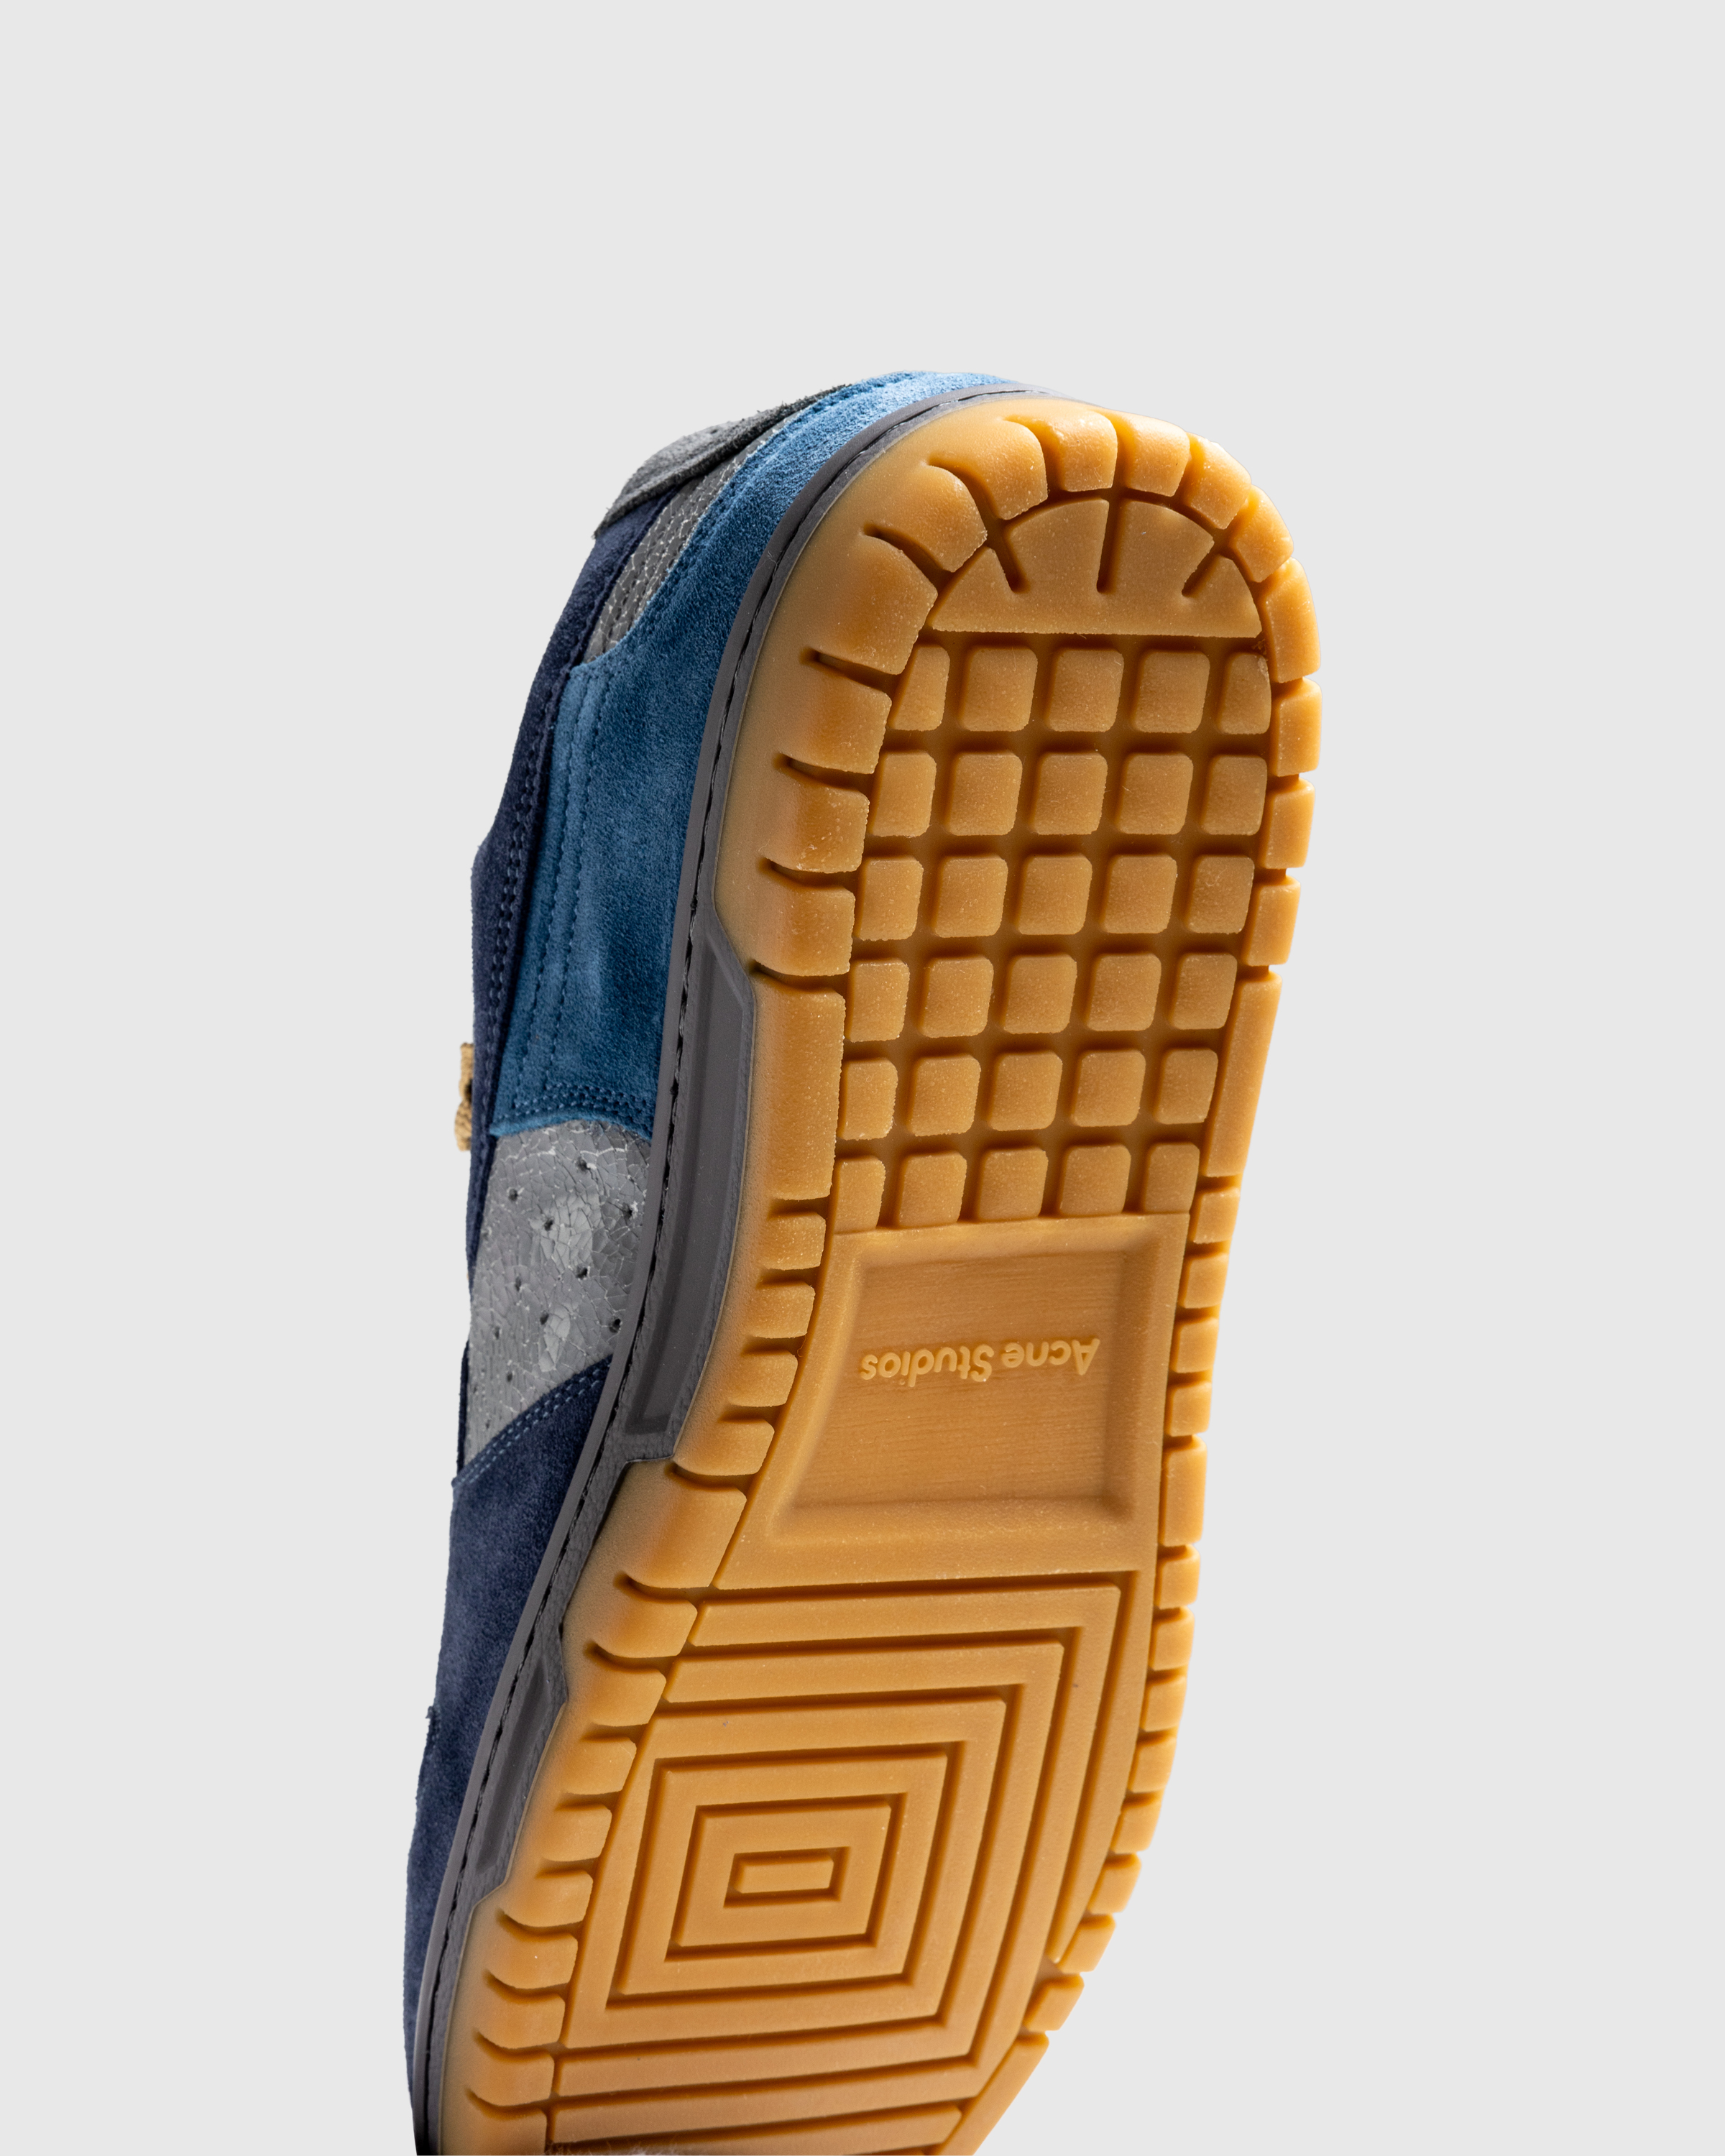 Acne Studios – Low-Top Sneakers Grey Blue - Sneakers - Blue - Image 6